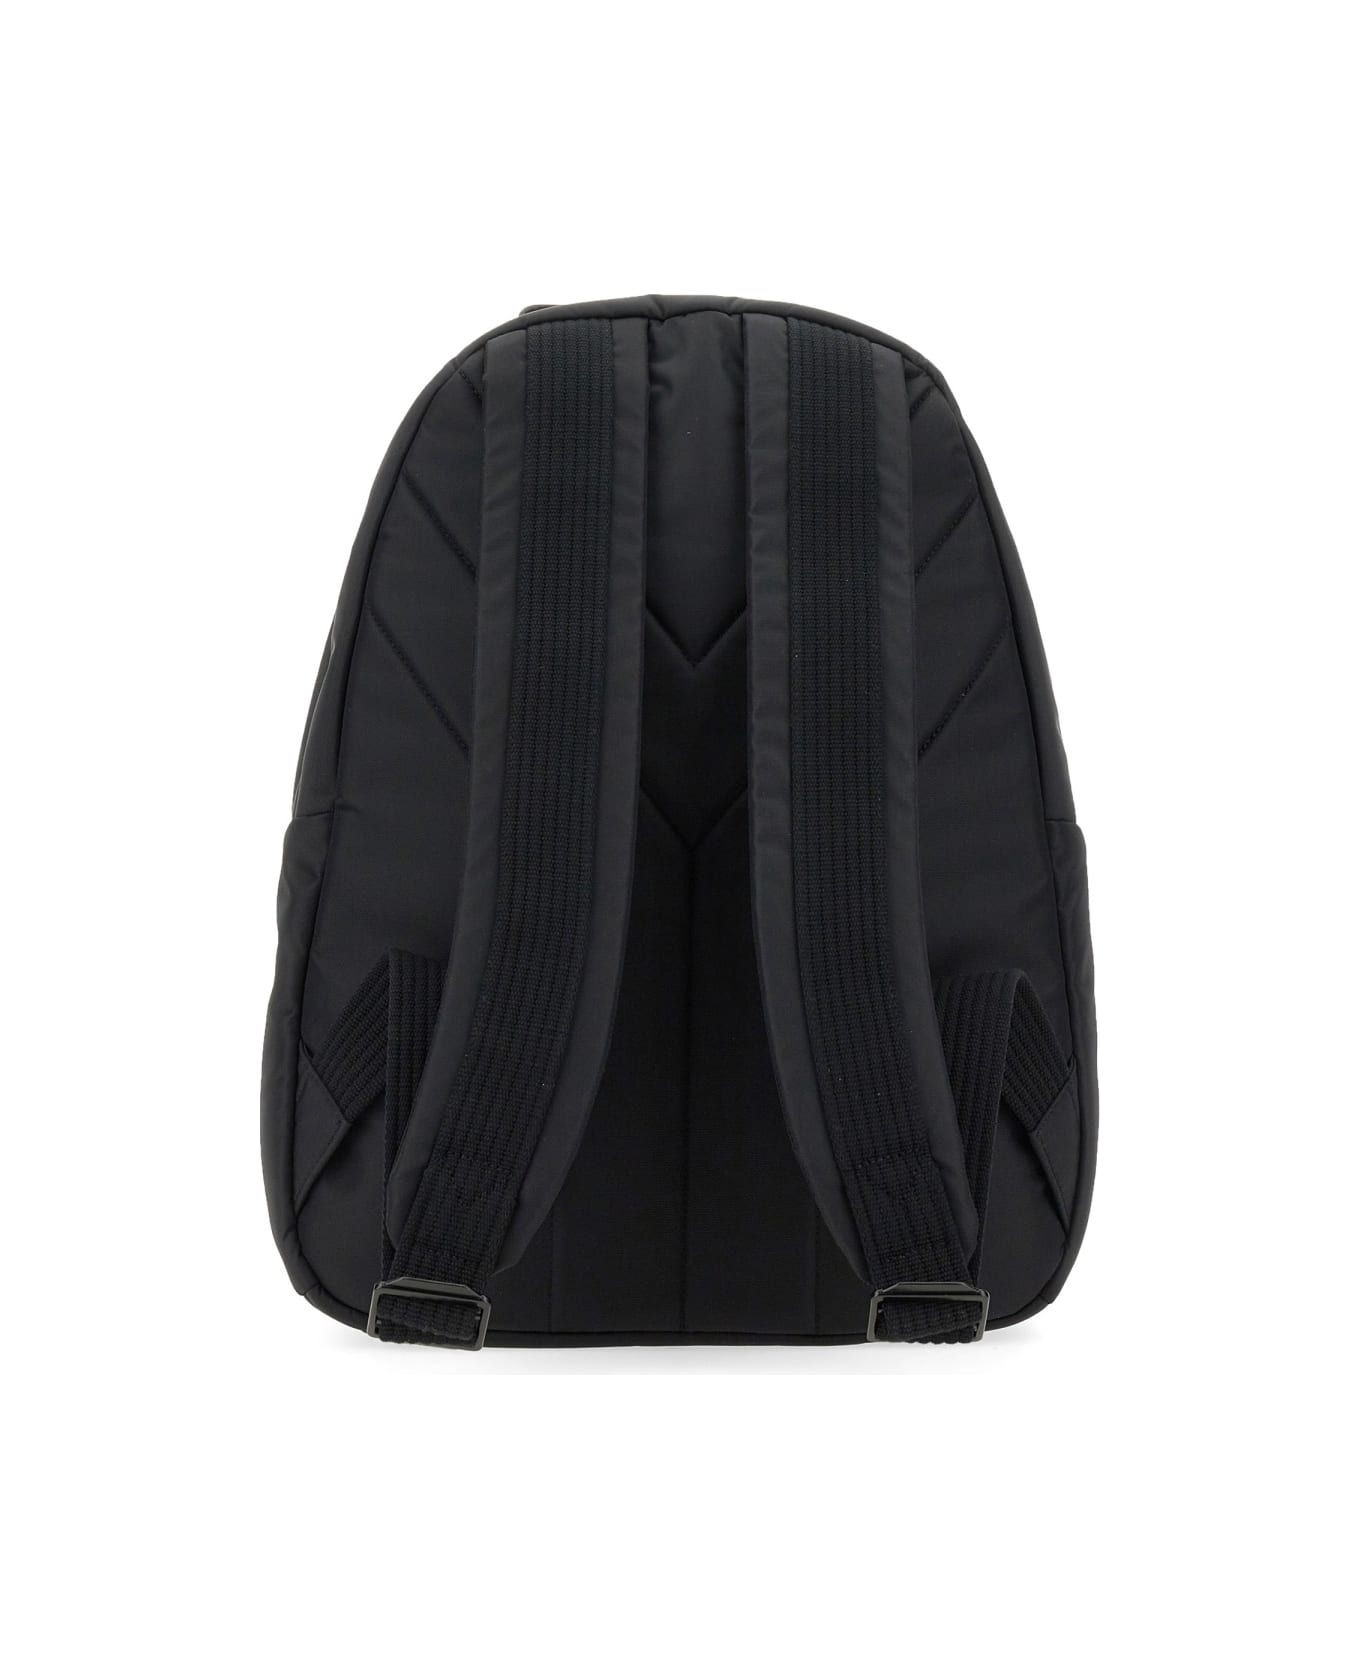 Y-3 Nylon Backpack - BLACK